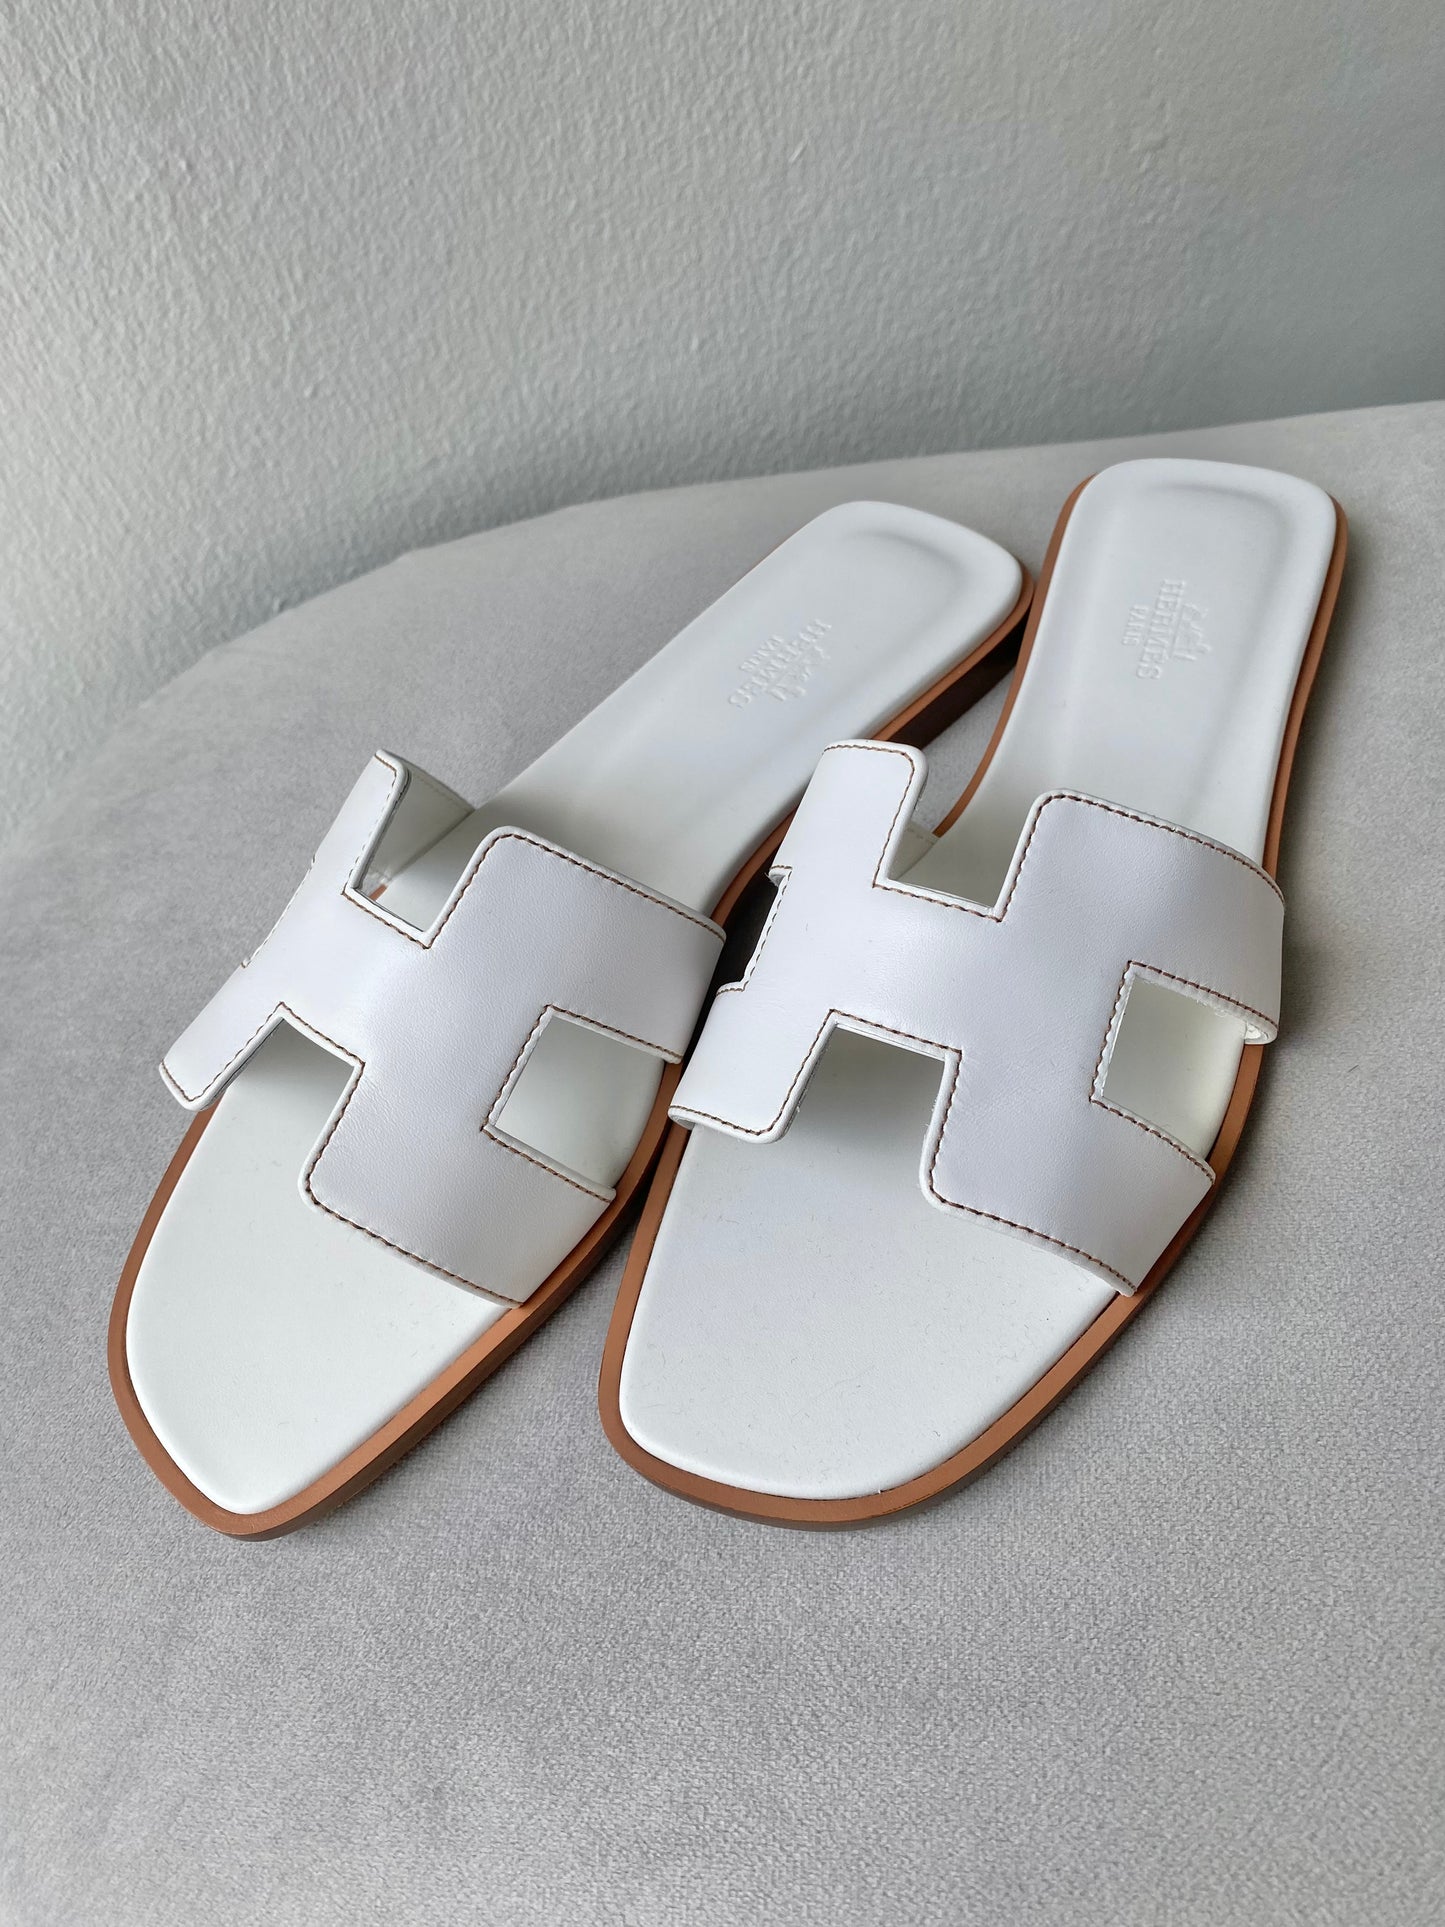 HERMÈS Oran Sandals in White